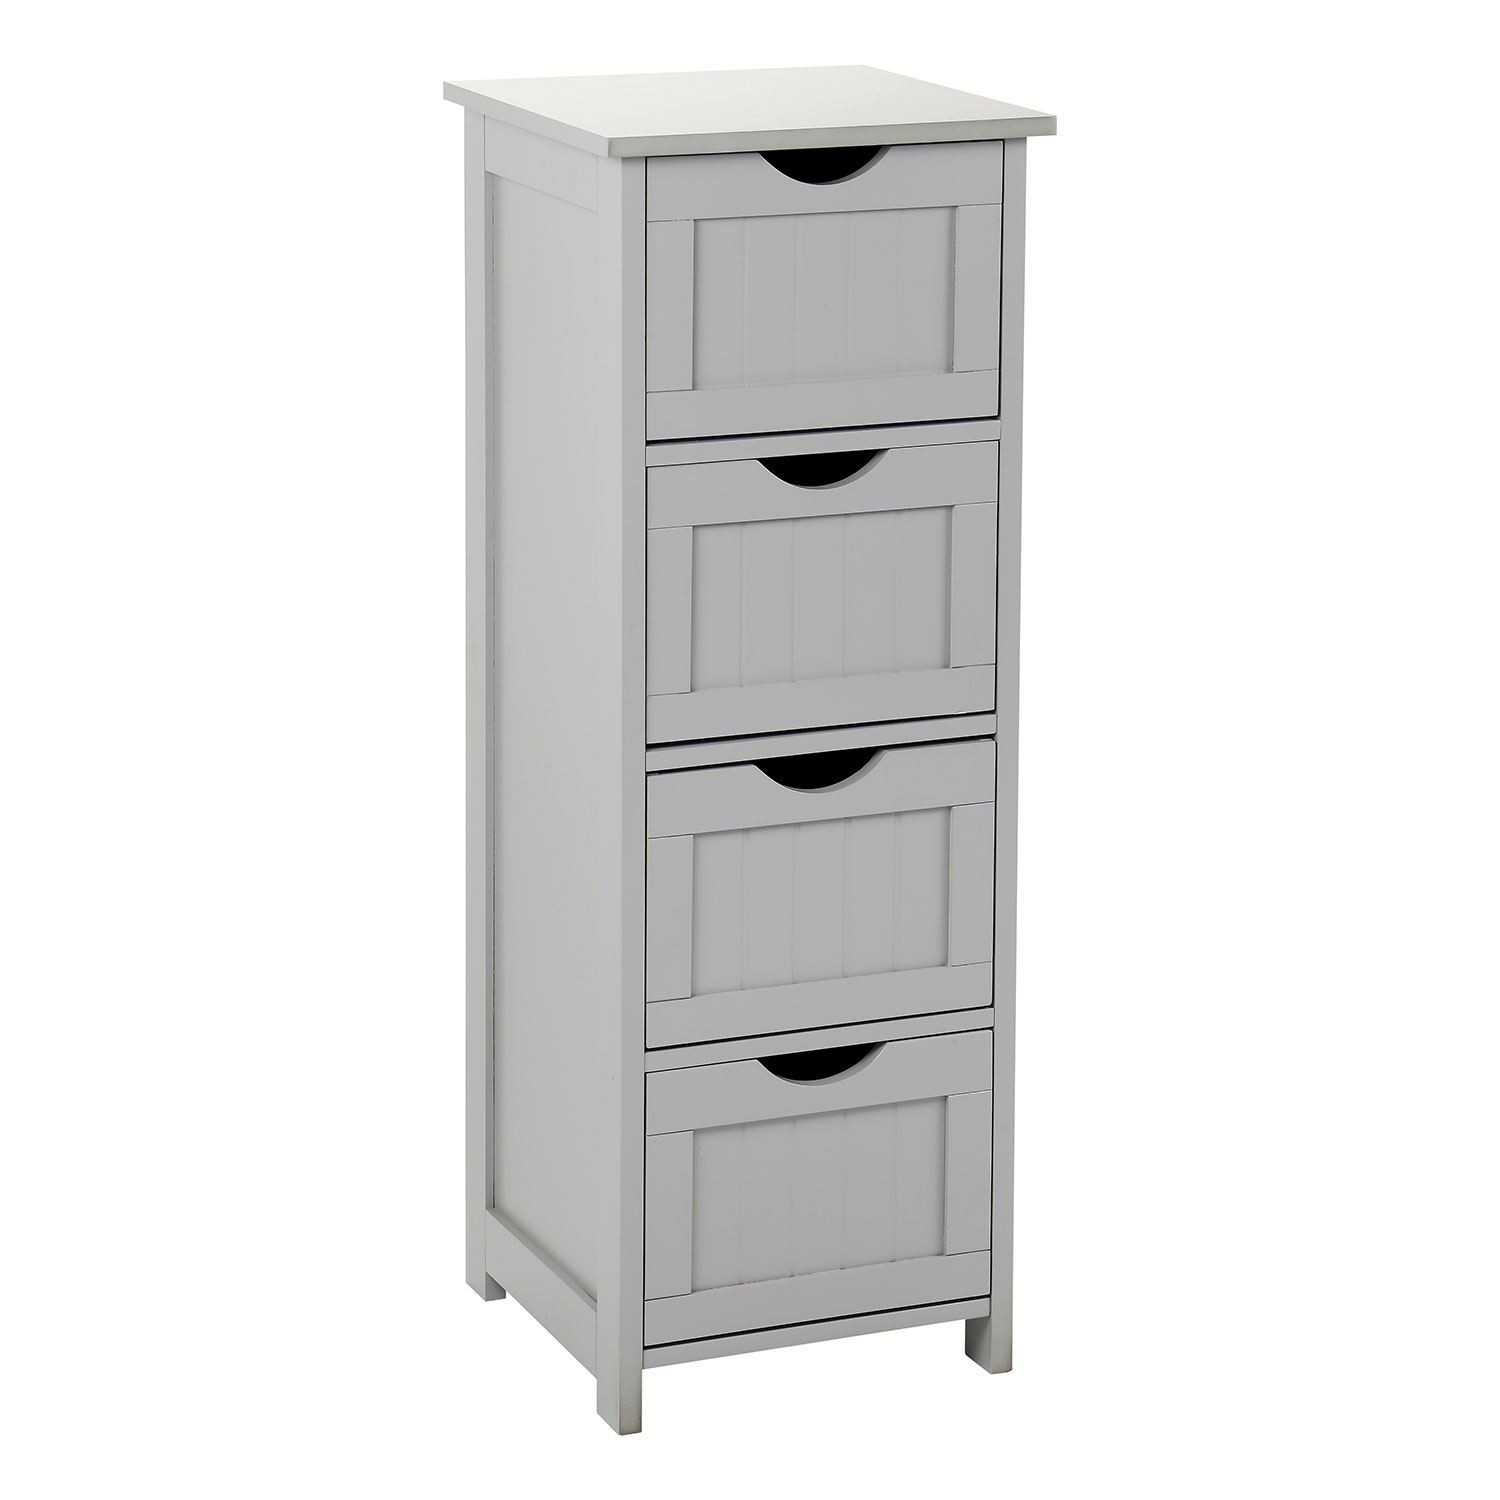 Storage Unit For Bedroom
 Grey Wooden Bathroom Cabinet Shelf Cupboard Bedroom